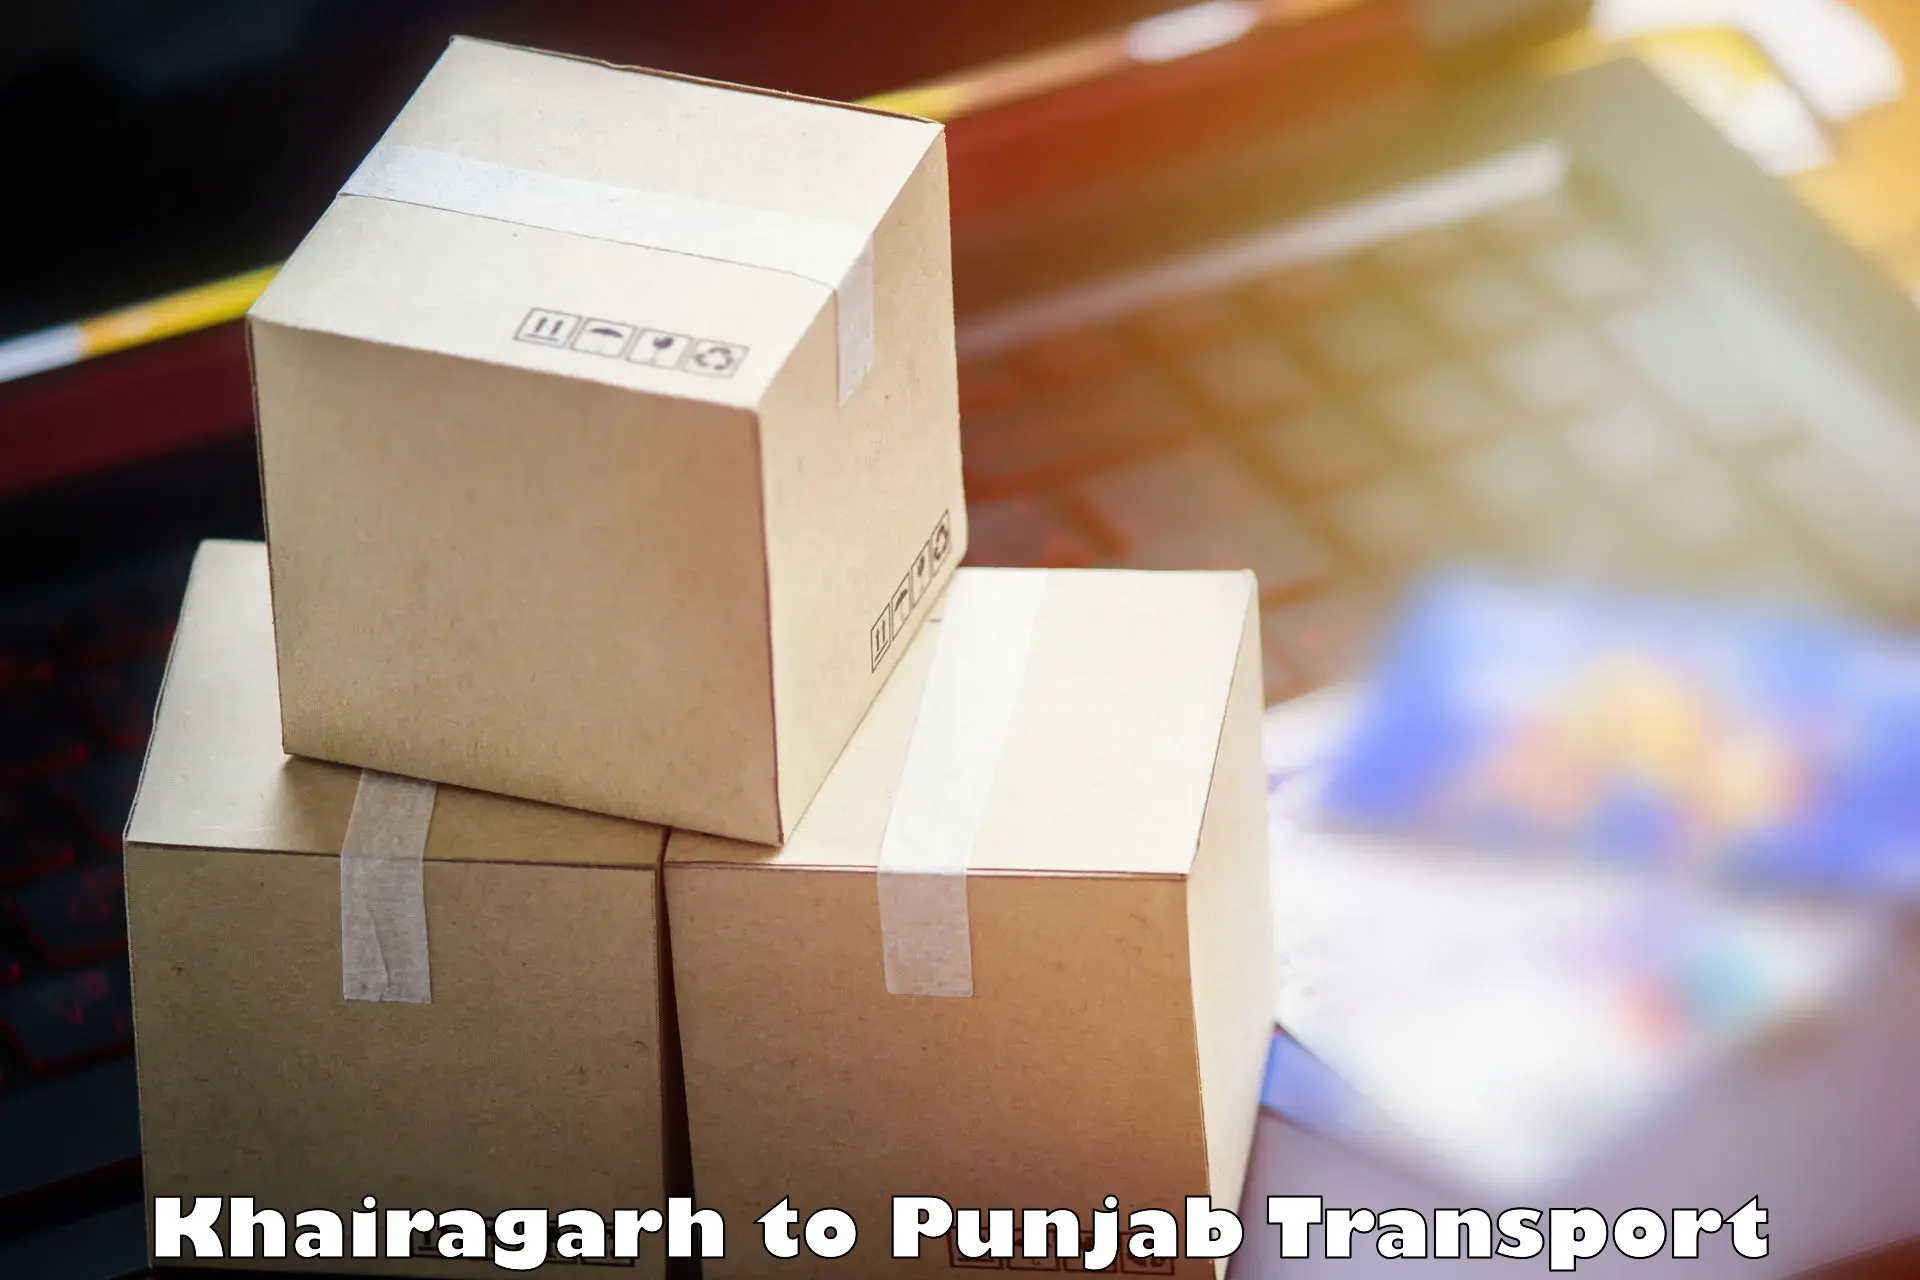 Furniture transport service in Khairagarh to Gurdaspur